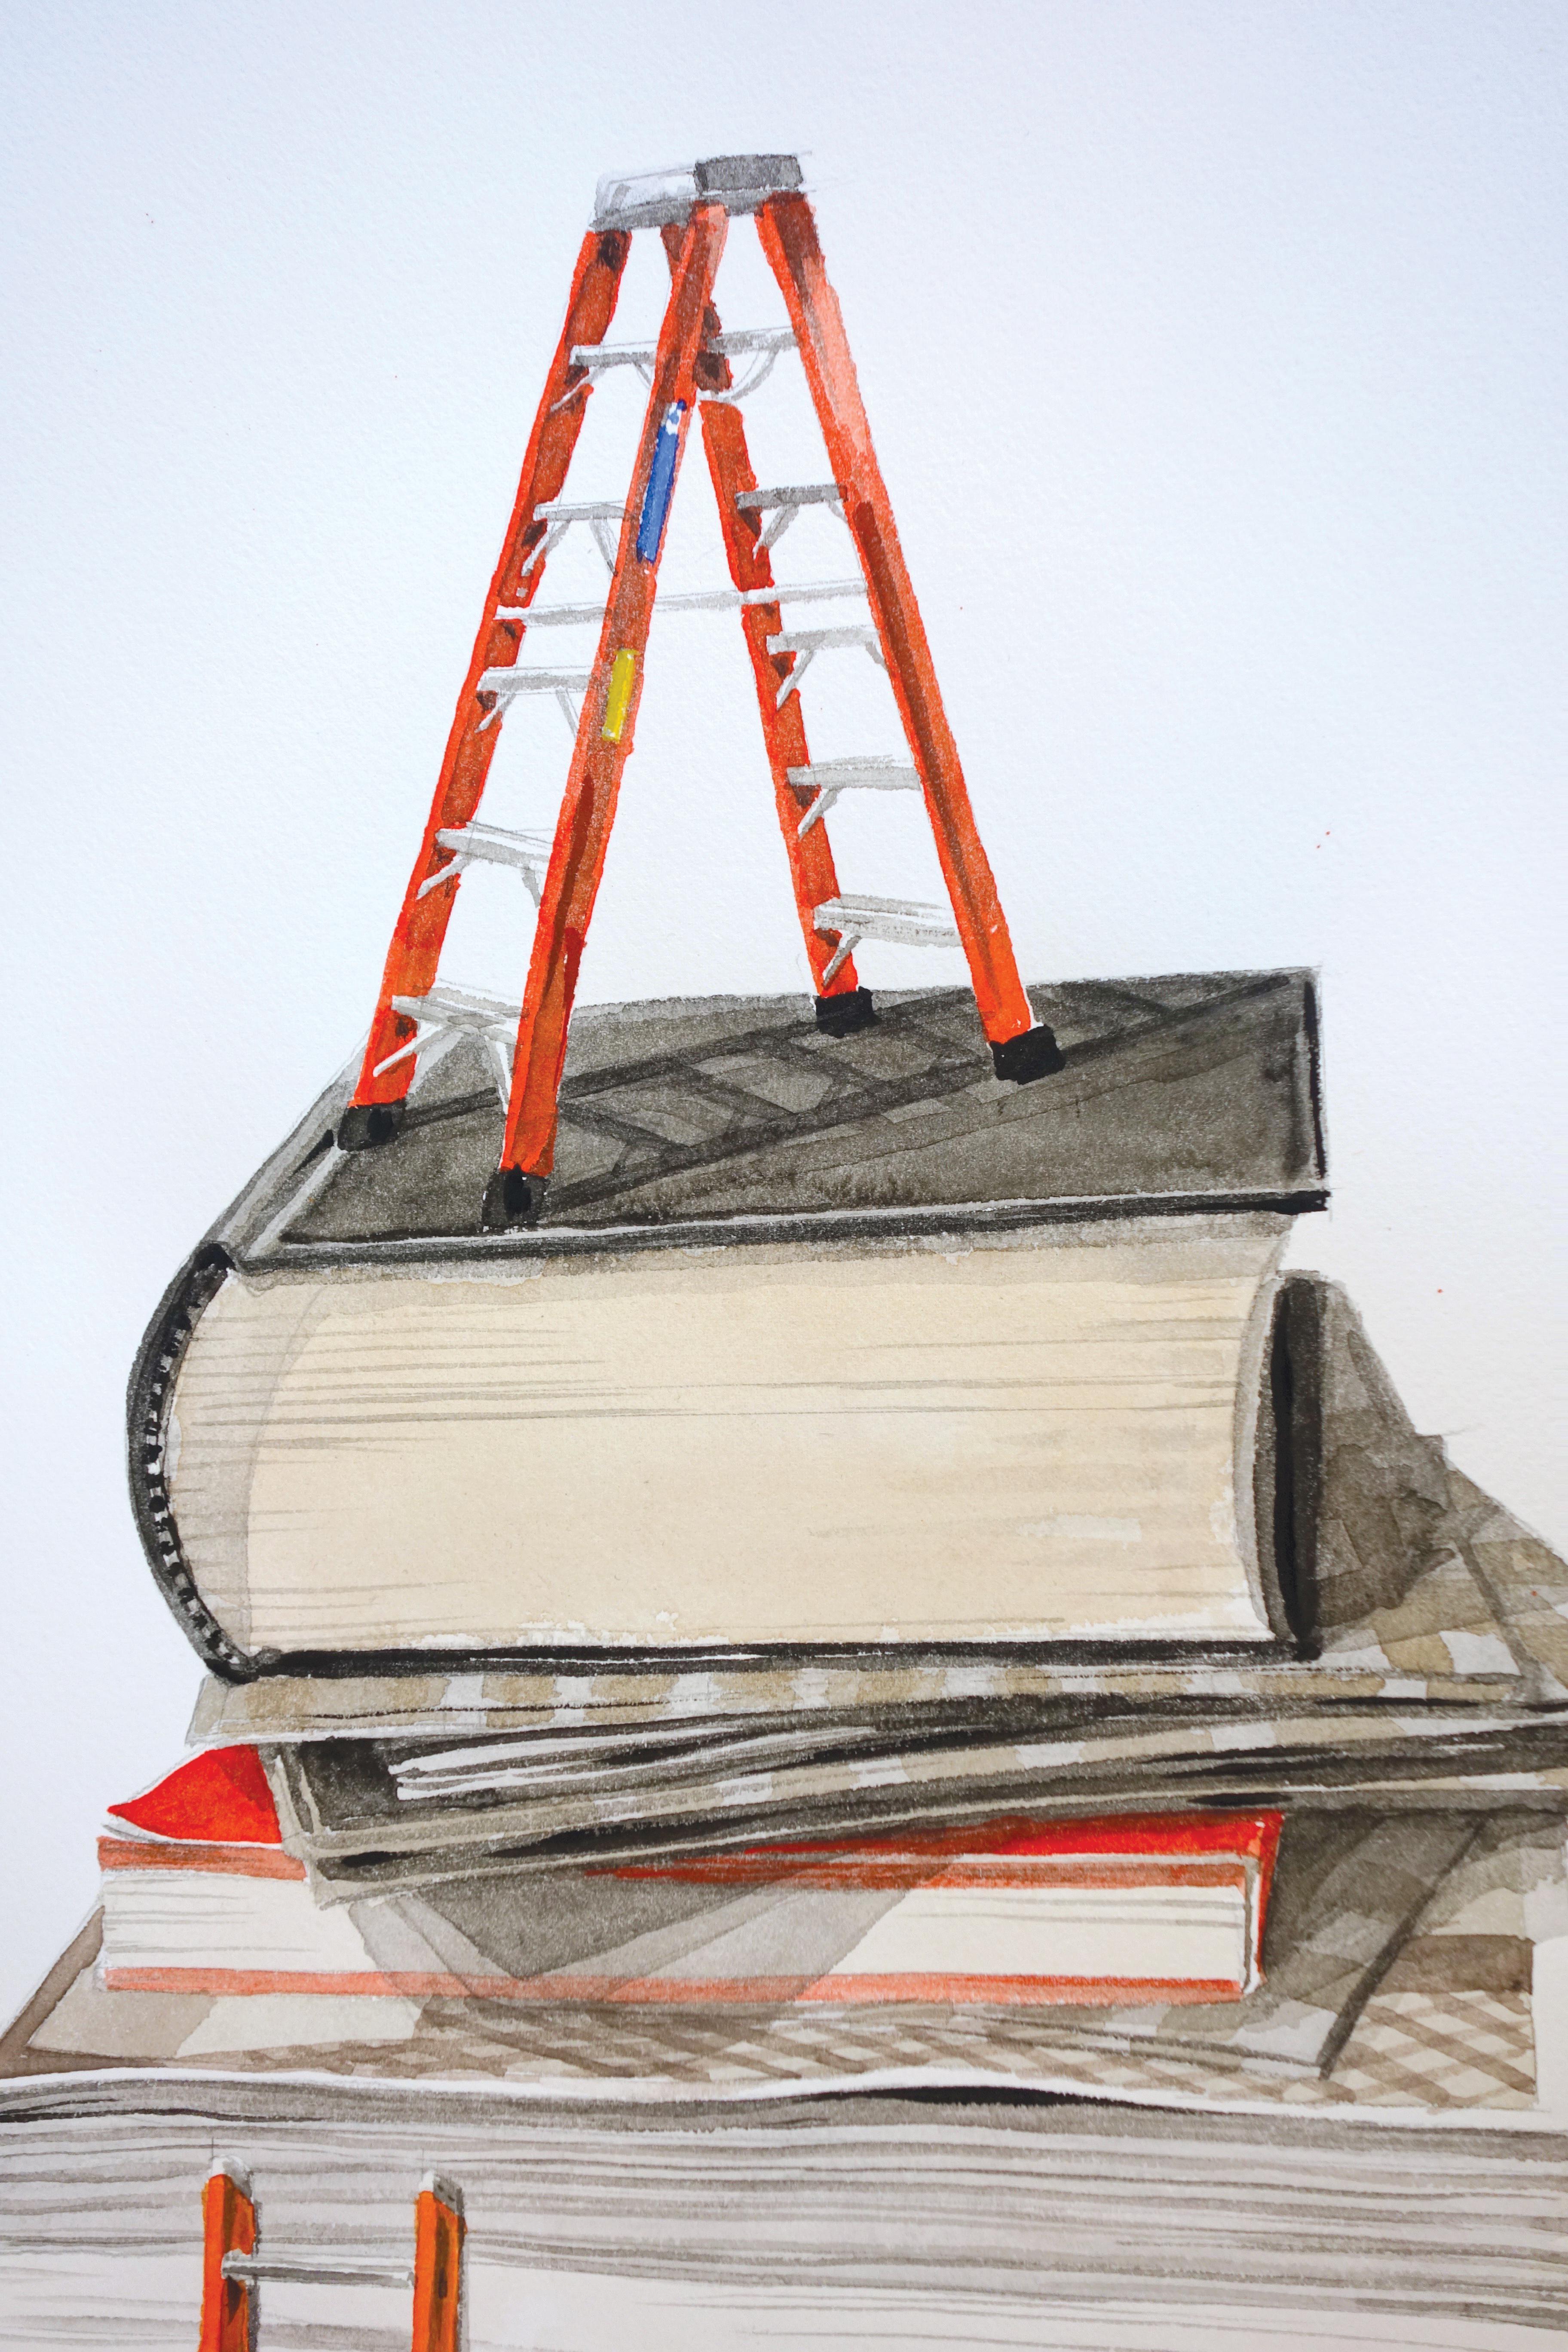 Surrealistisches Stillleben „Beyond Reach“ aus Büchern mit Leitern – Painting von Thomas Broadbent